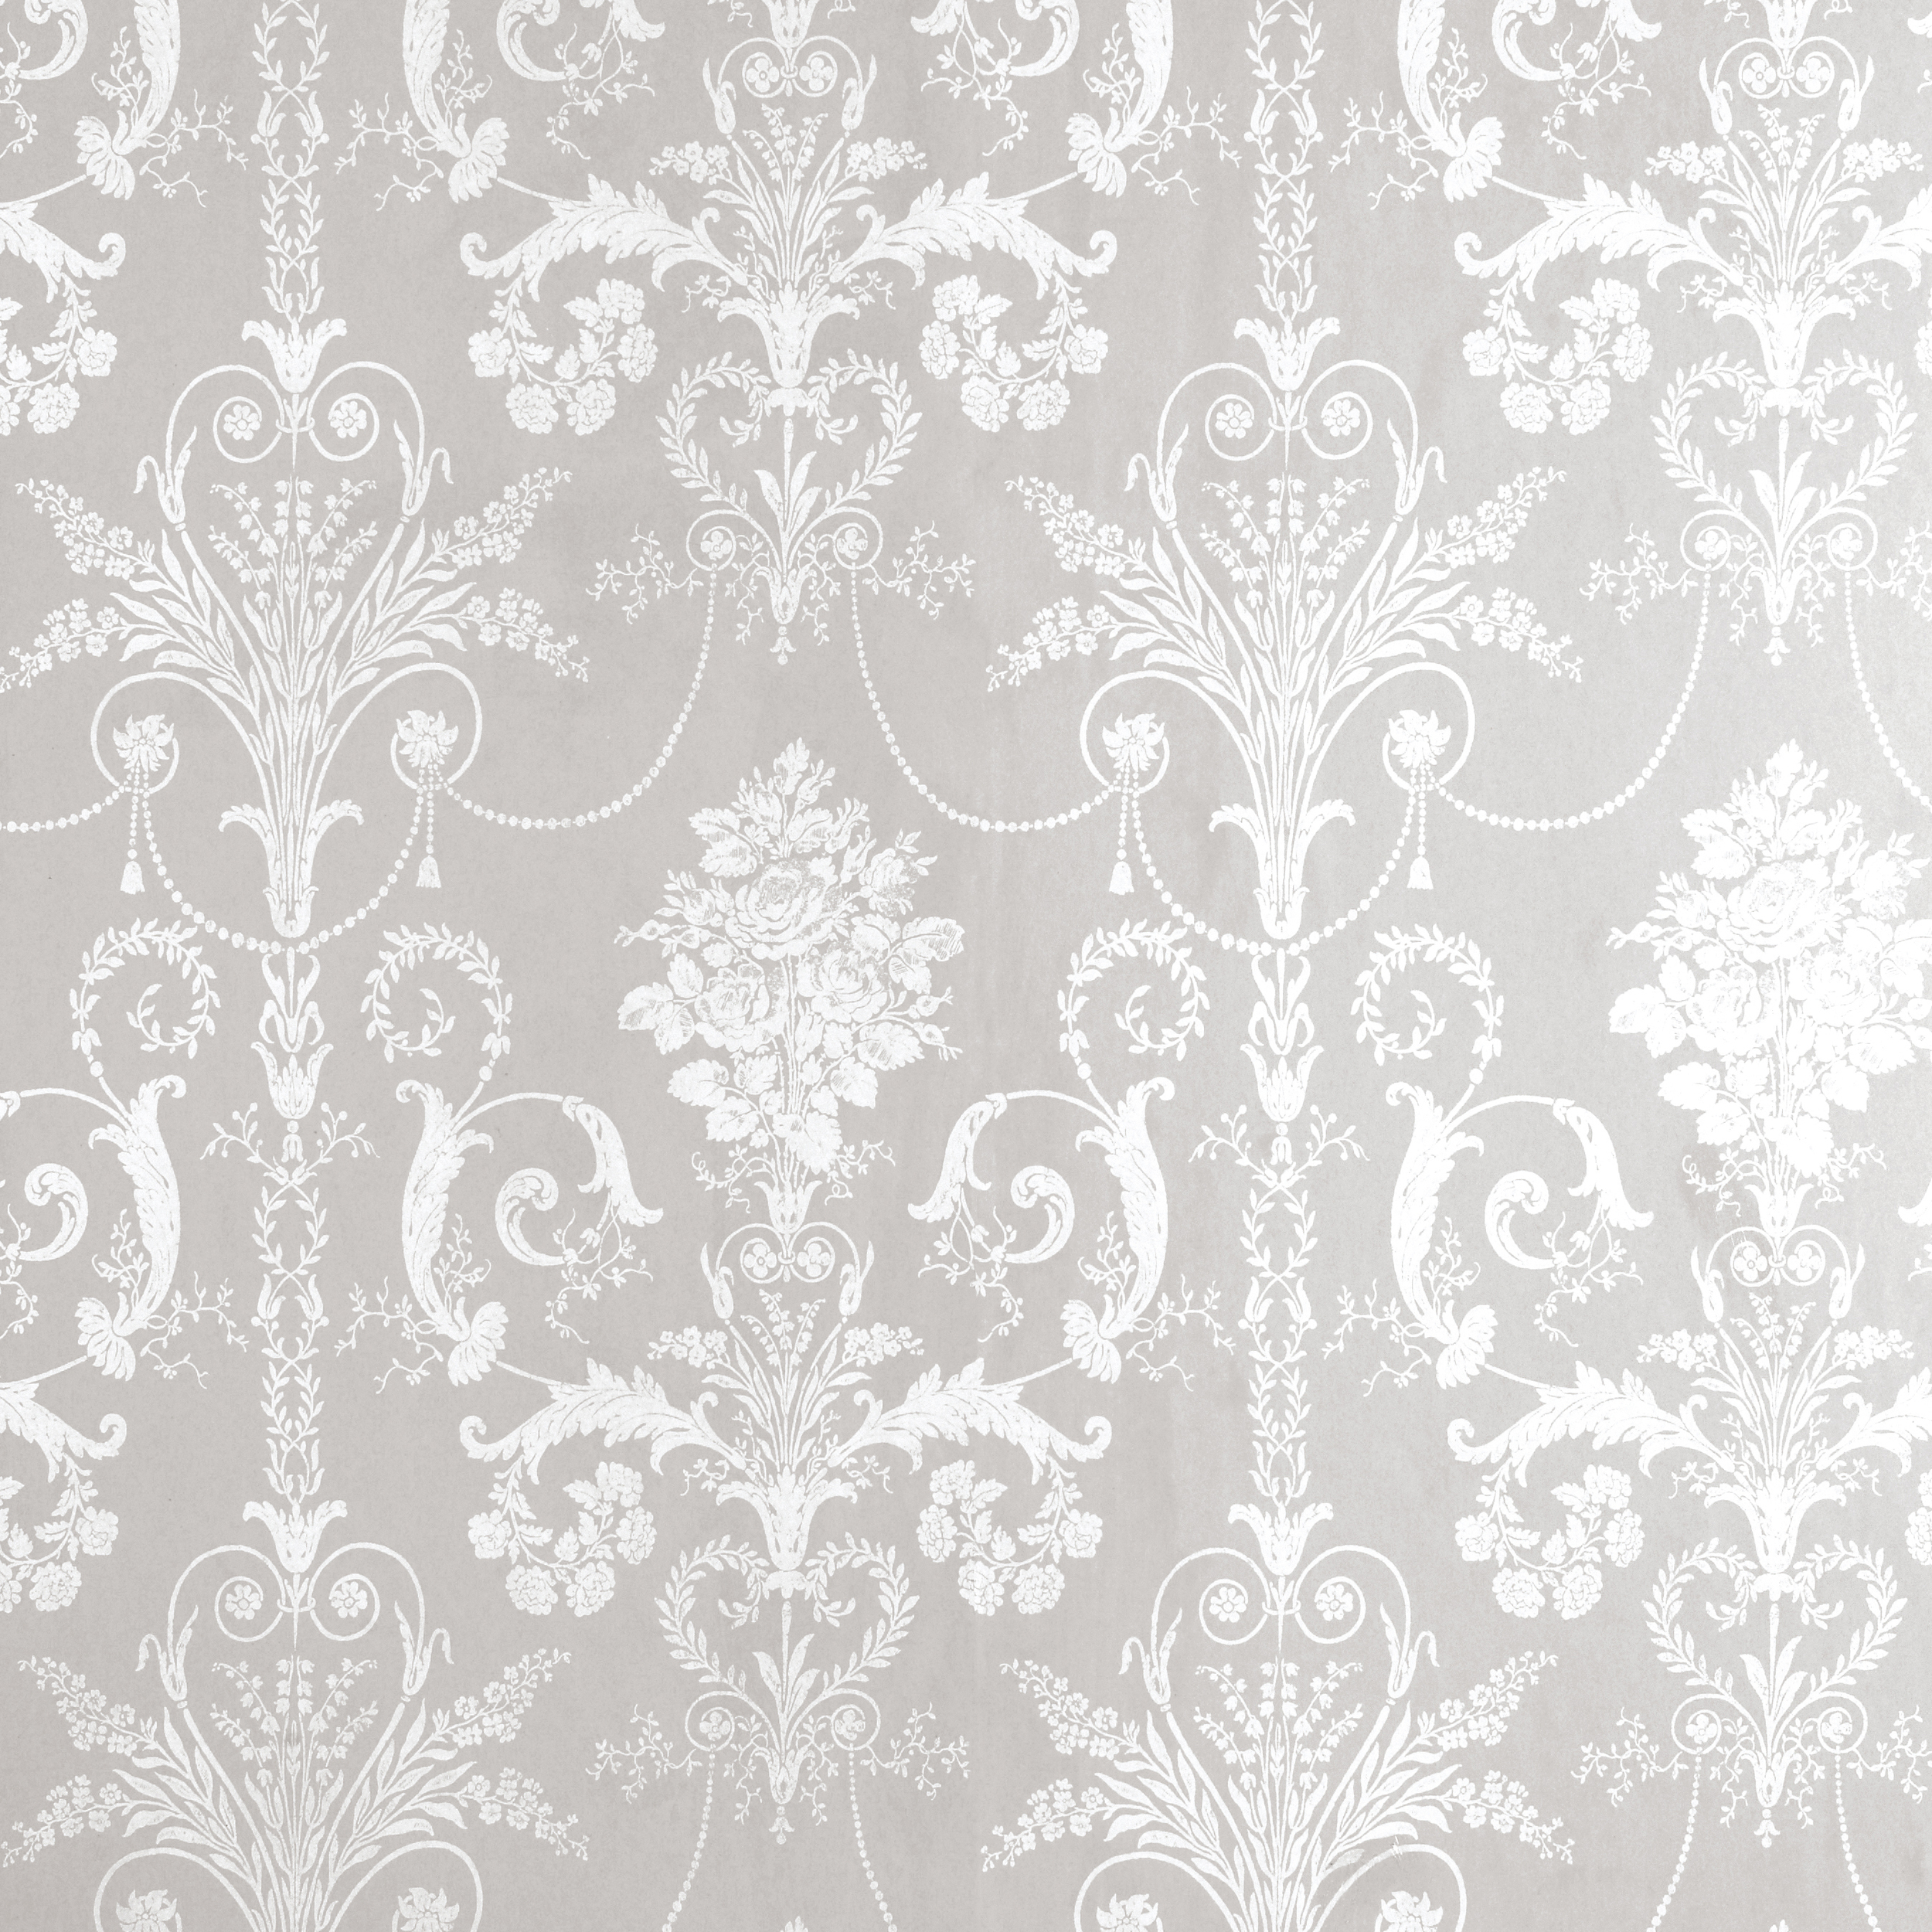 49 Grey Wallpaper Designs On Wallpapersafari